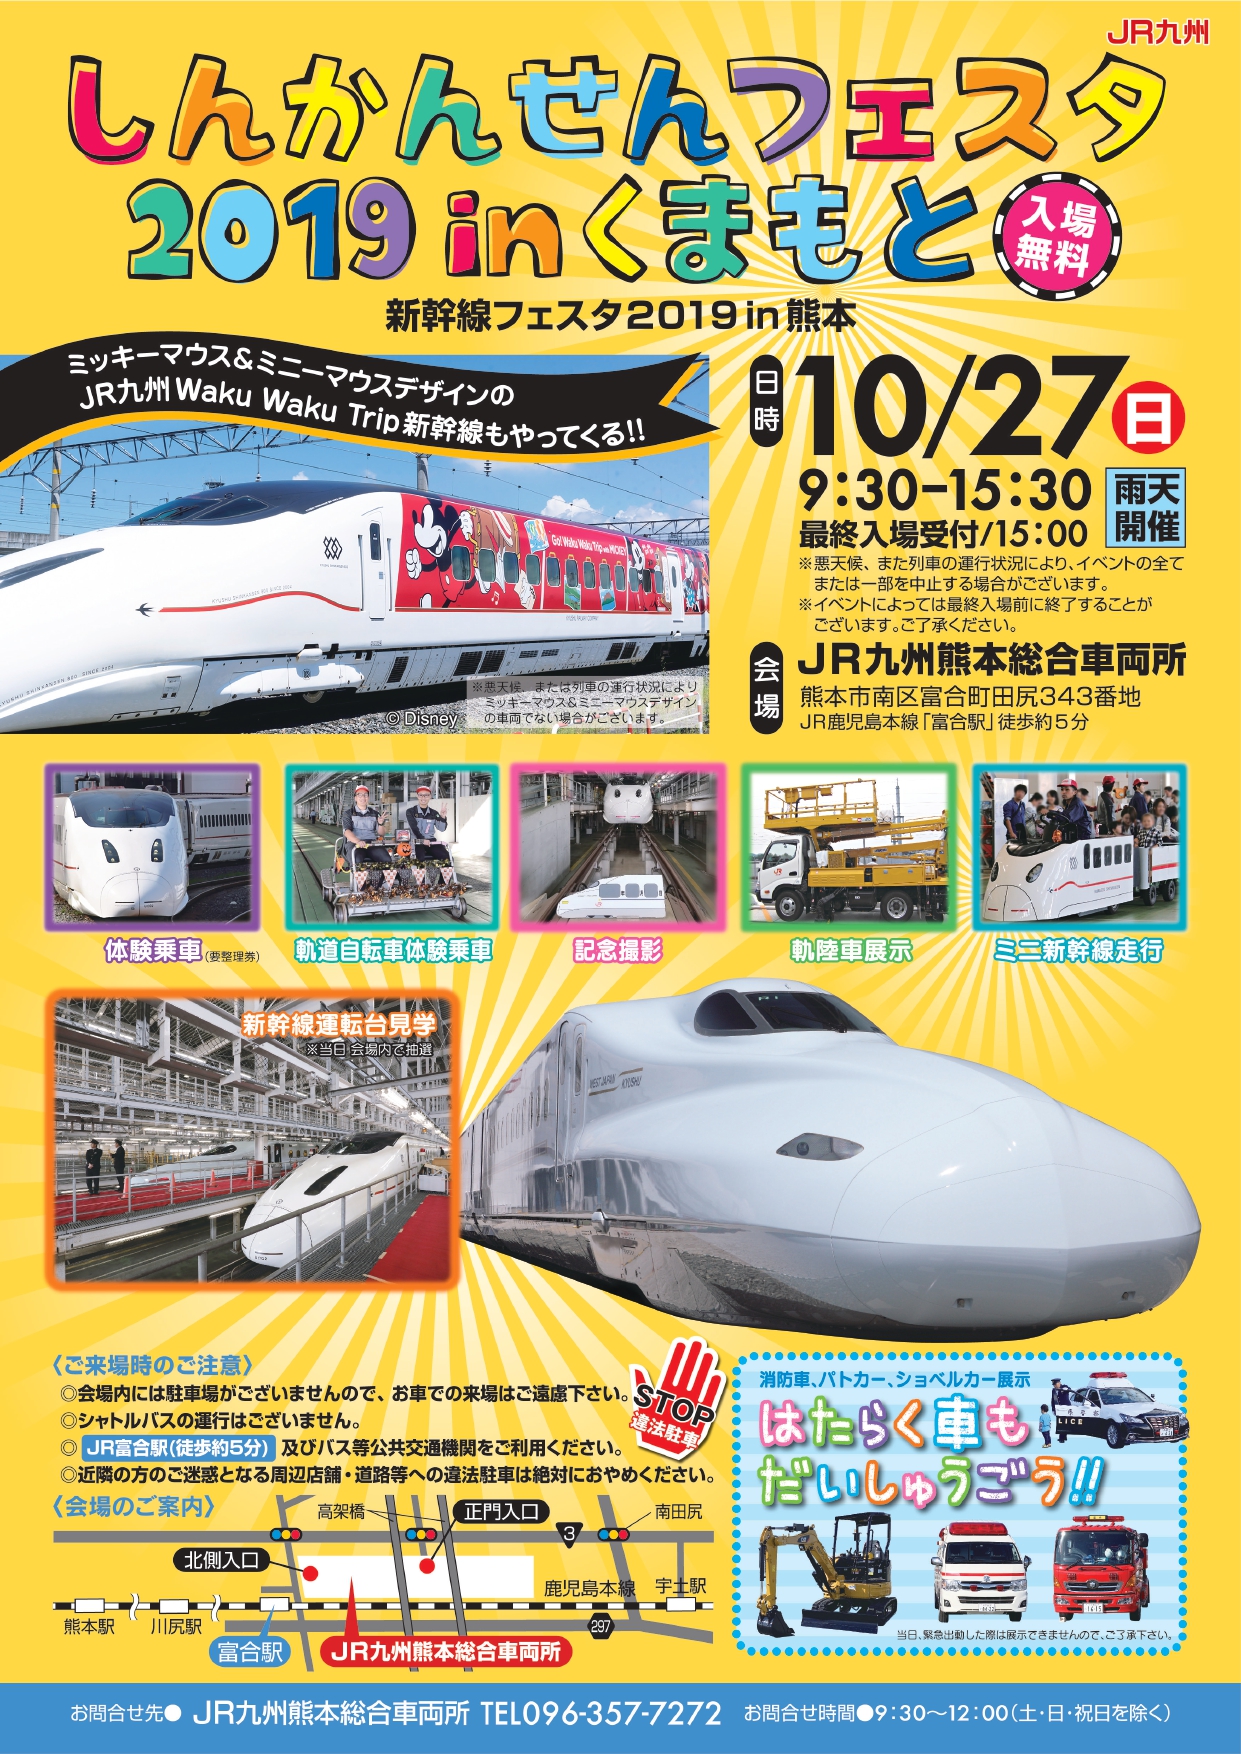 子どもから大人まで一日中楽しめる 昨年は約1万人が来場 今年も 新幹線フェスタ19 In 熊本 を開催 九州旅客鉄道株式会社のプレスリリース